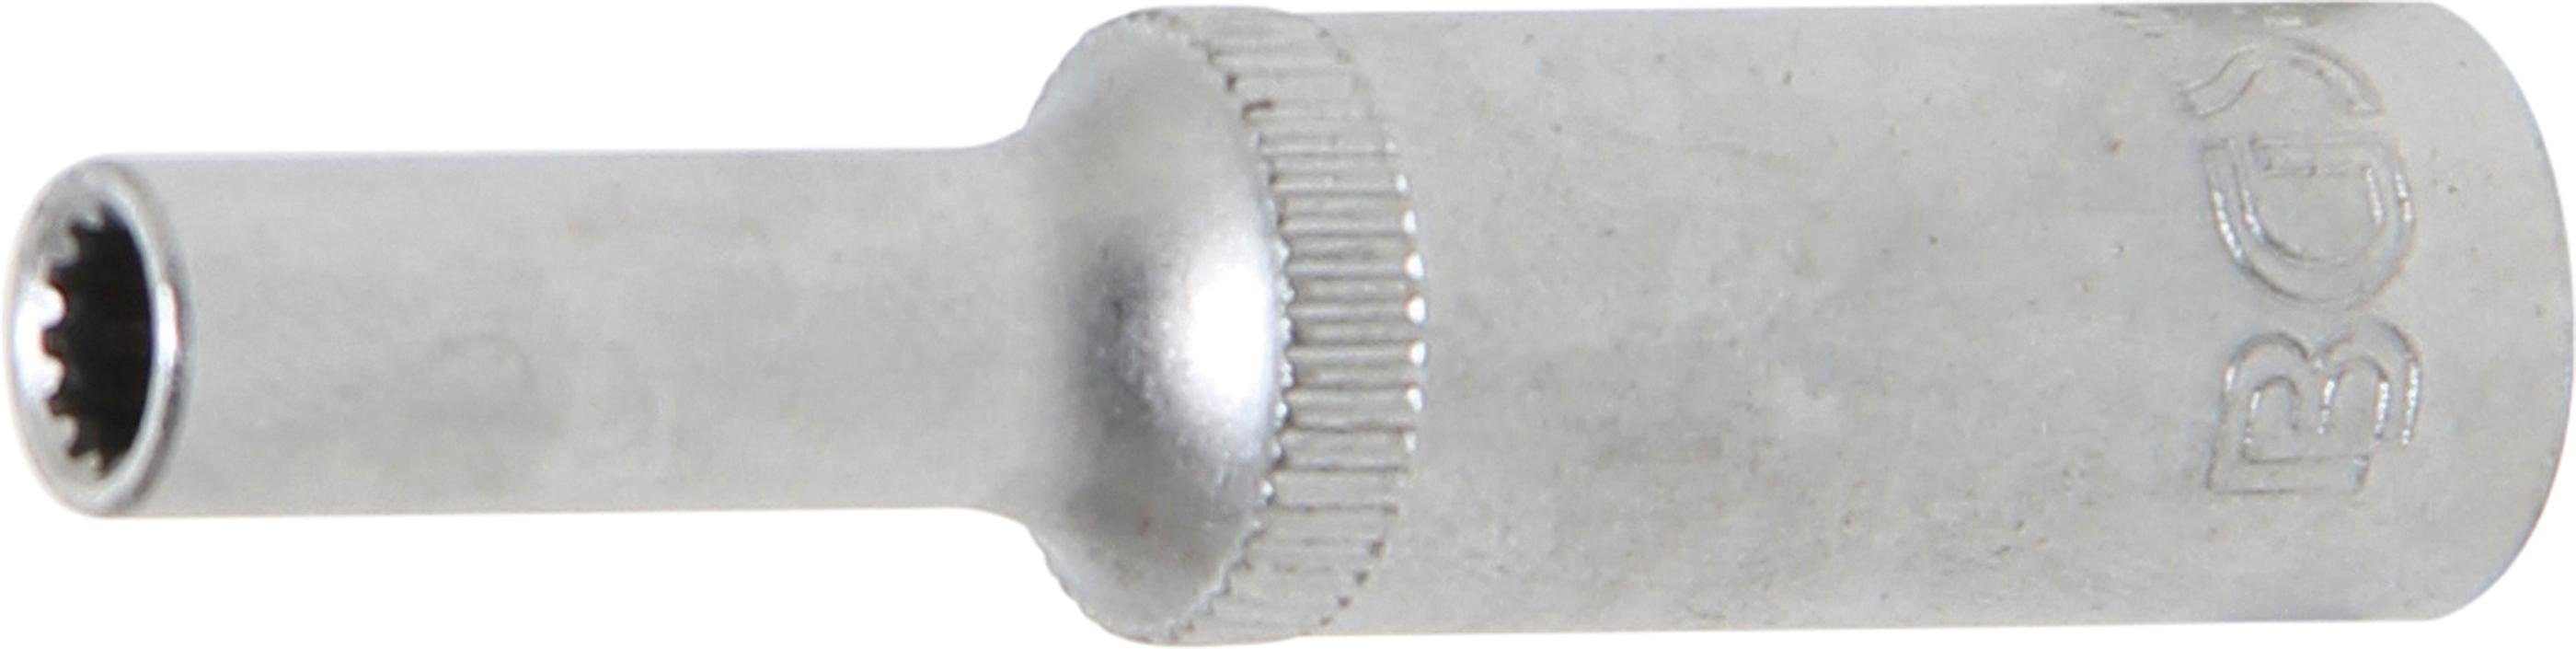 BGS technic Steckschlüssel Steckschlüssel-Einsatz Gear Lock, tief, Antrieb Innenvierkant 6,3 mm (1/4), SW 4 mm